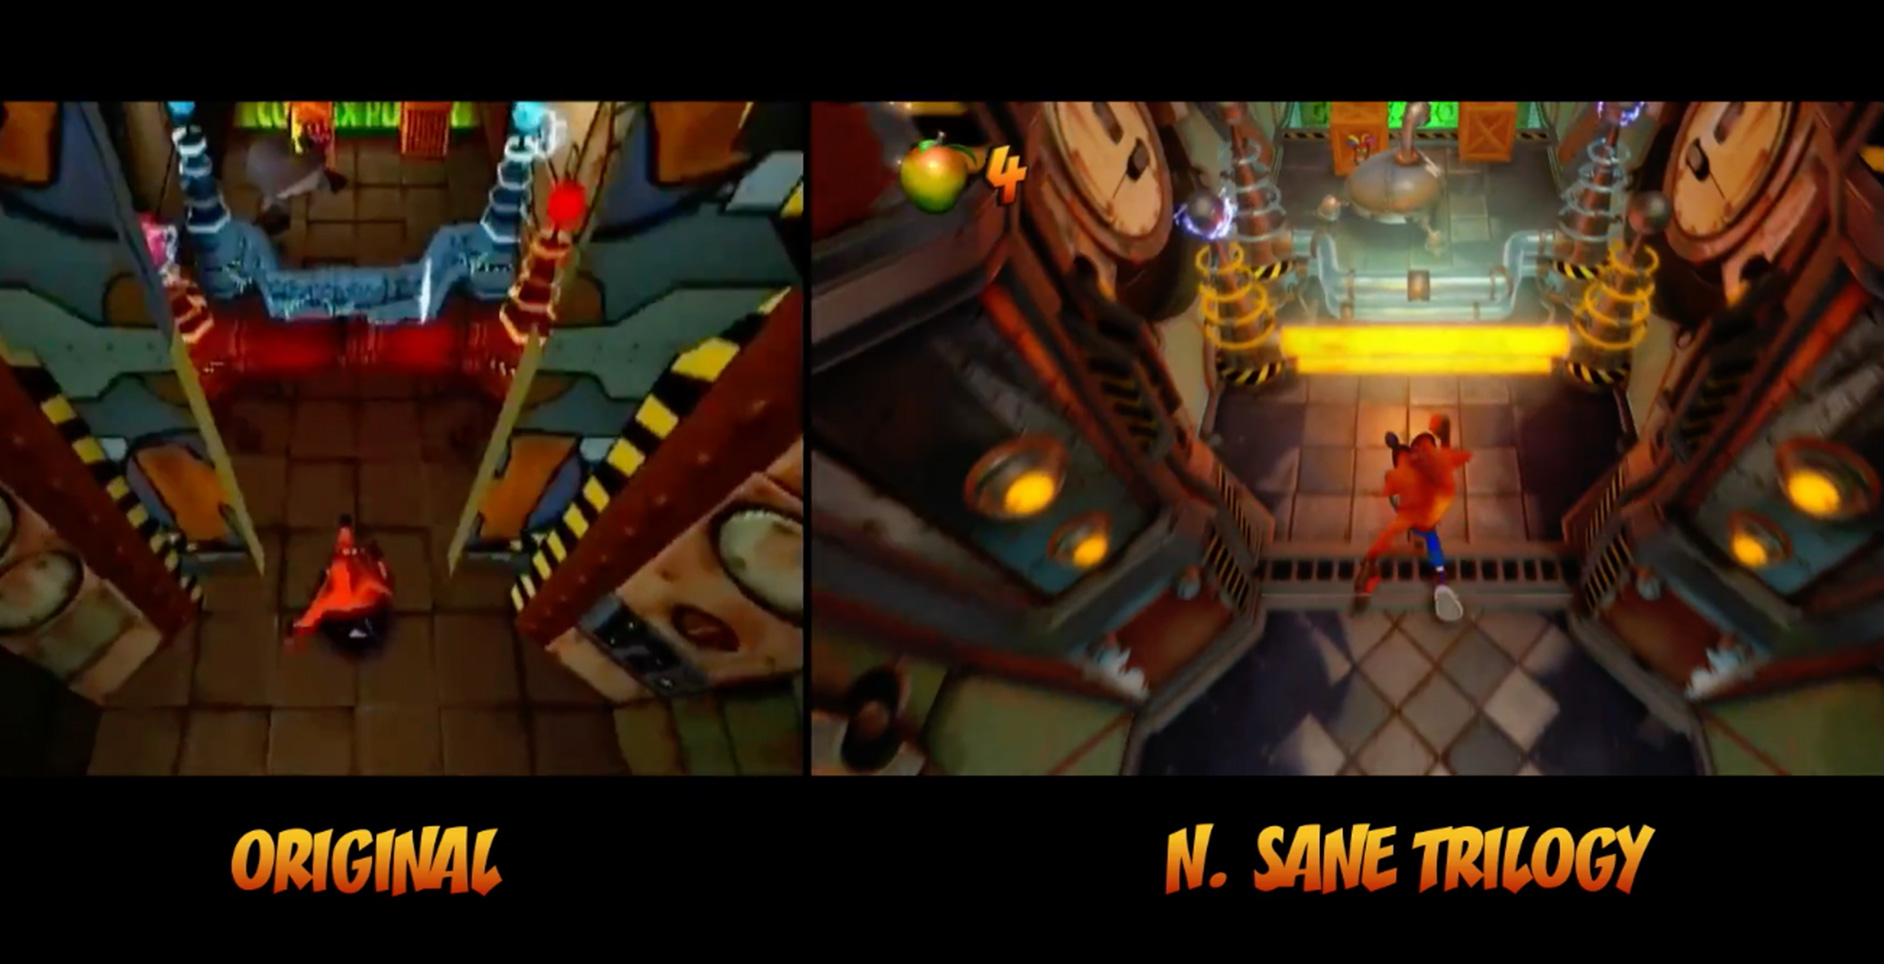 Video: Crash Bandicoot N. Sane Trilogy Switch vs. PS4 comparison